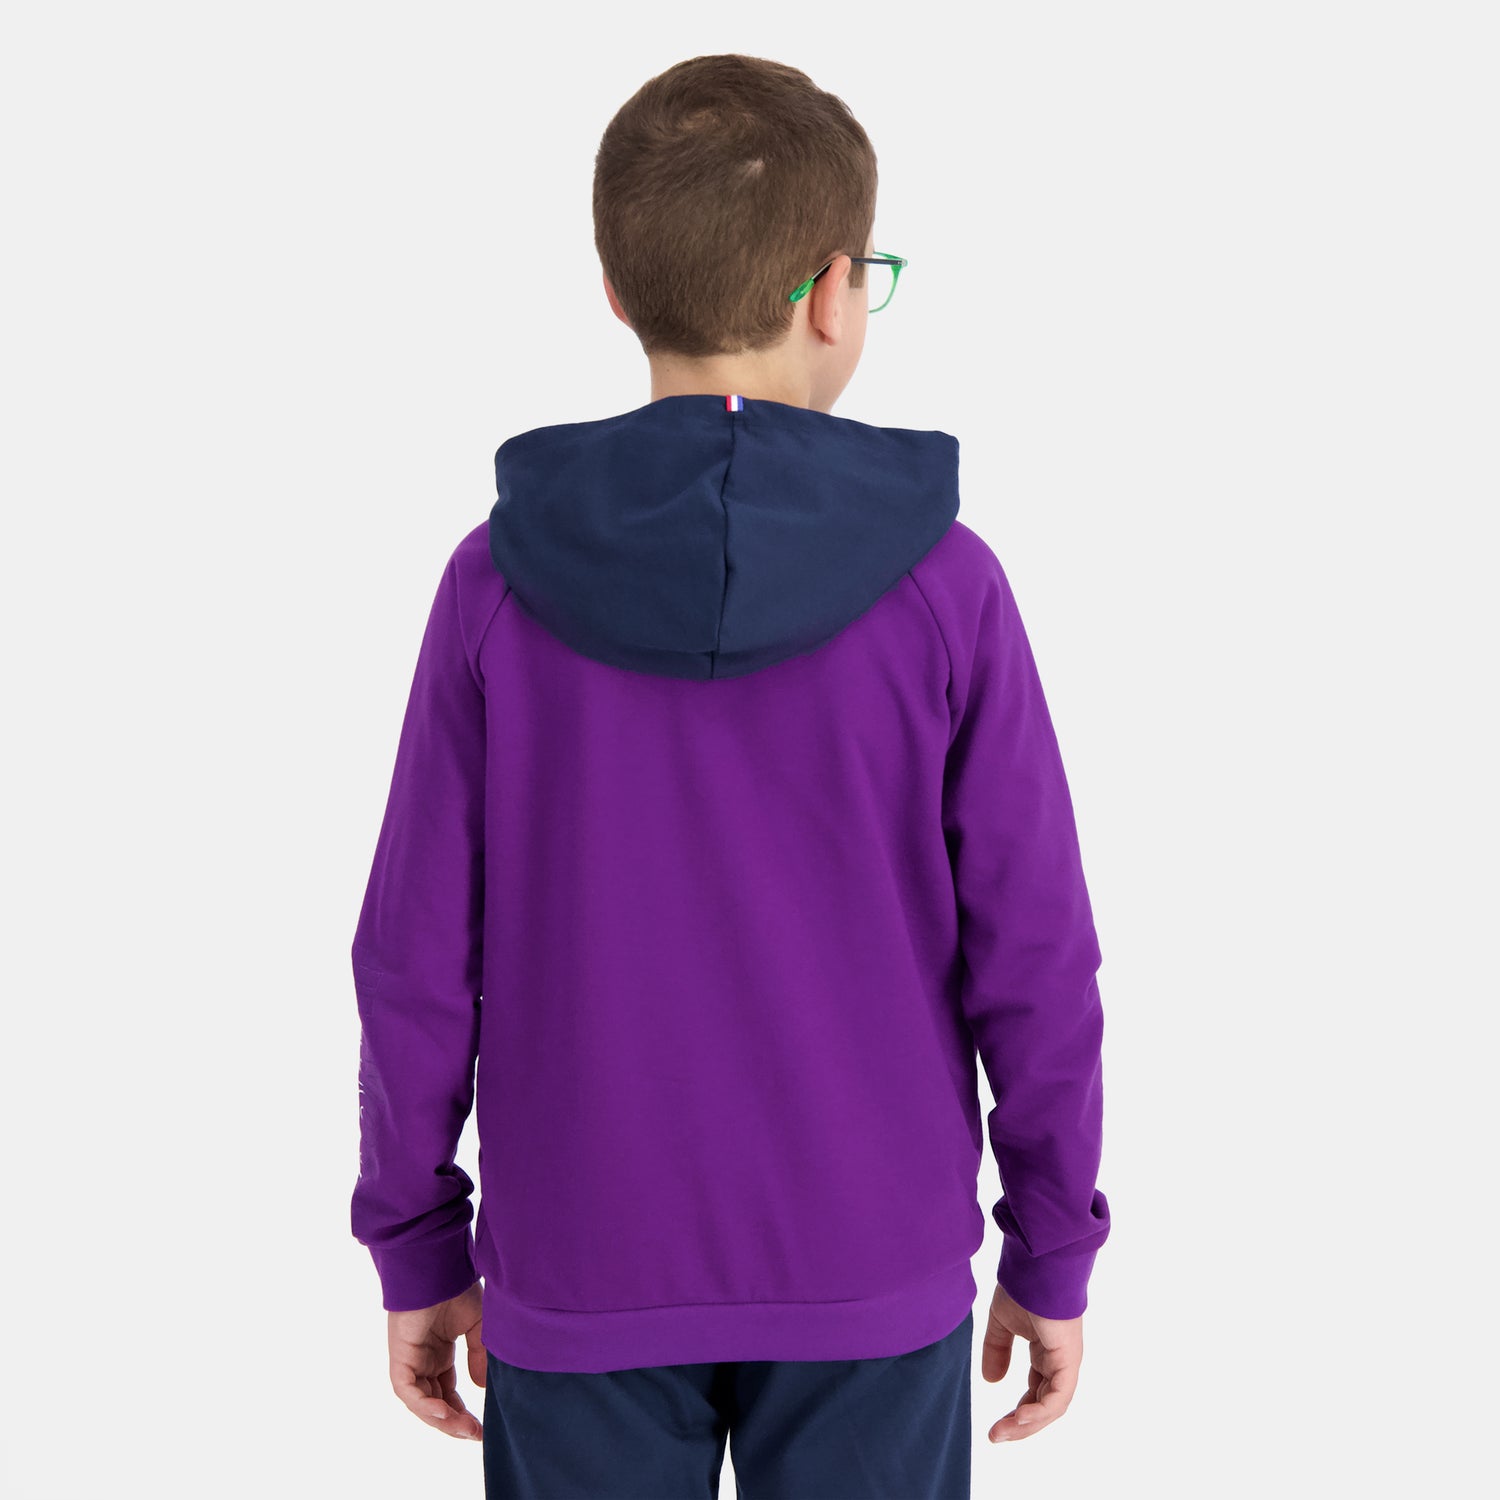 2410685-SAISON 2 Hoody N°1 Enfant violet j/dress  | Kapuzenpullover für Kinder